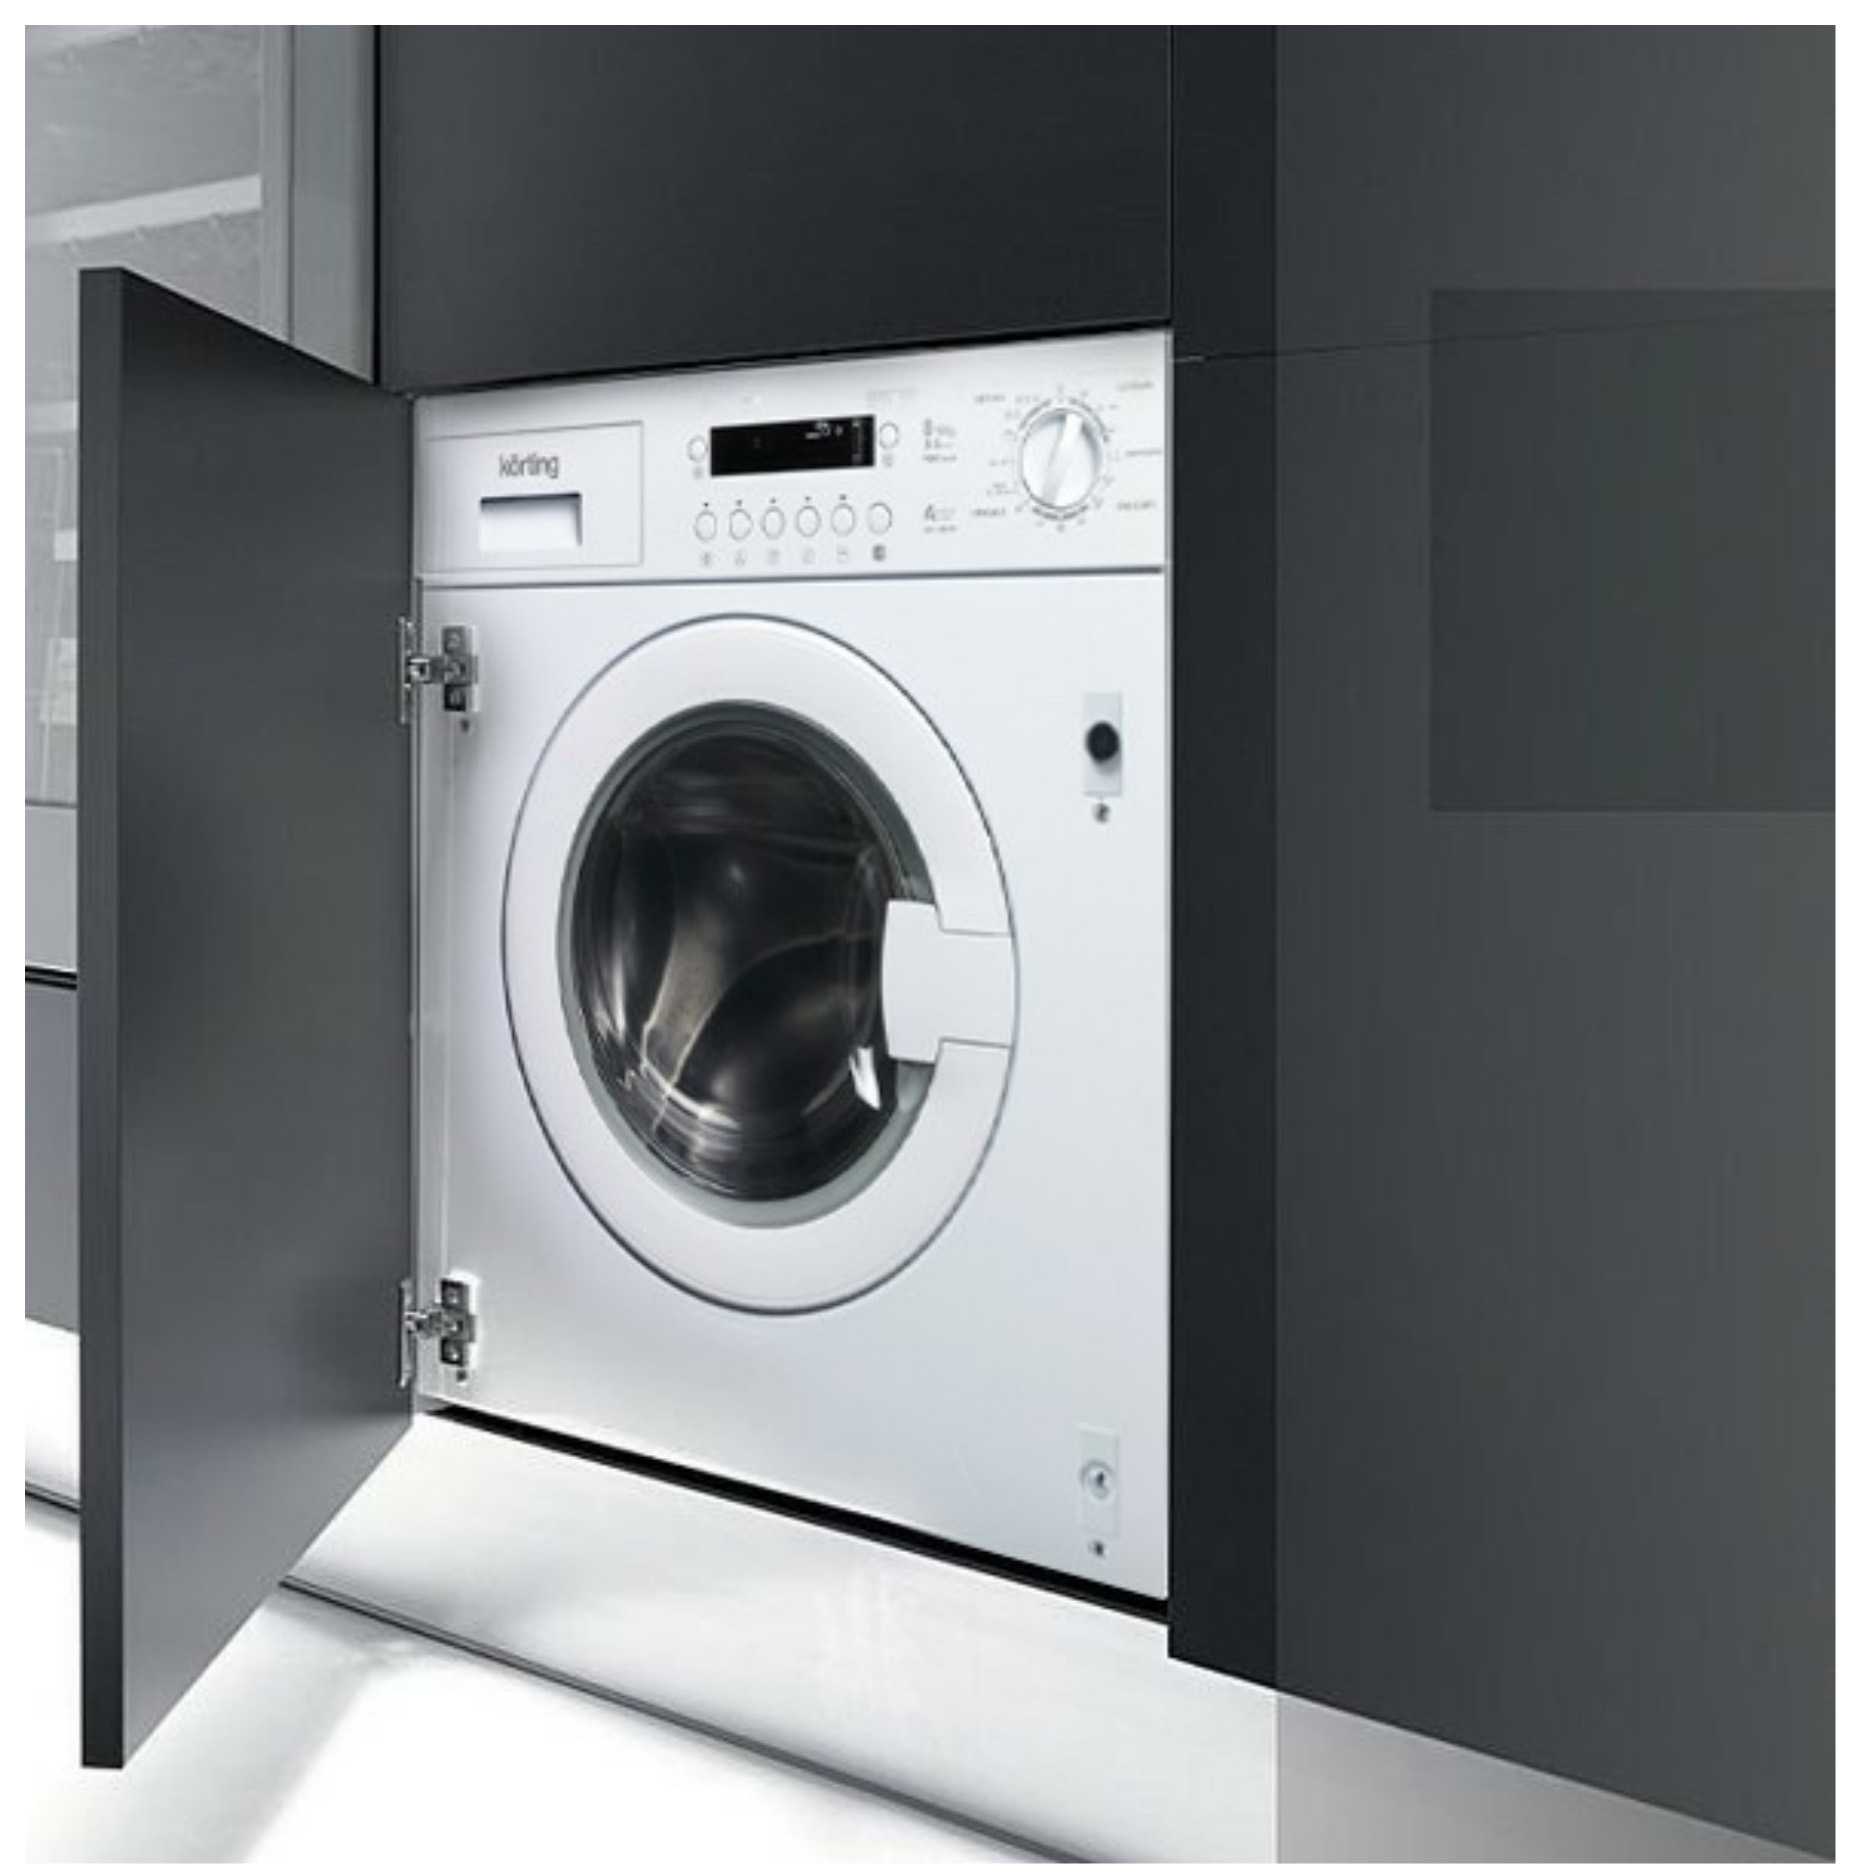 KWM 1470 W стиральная машина